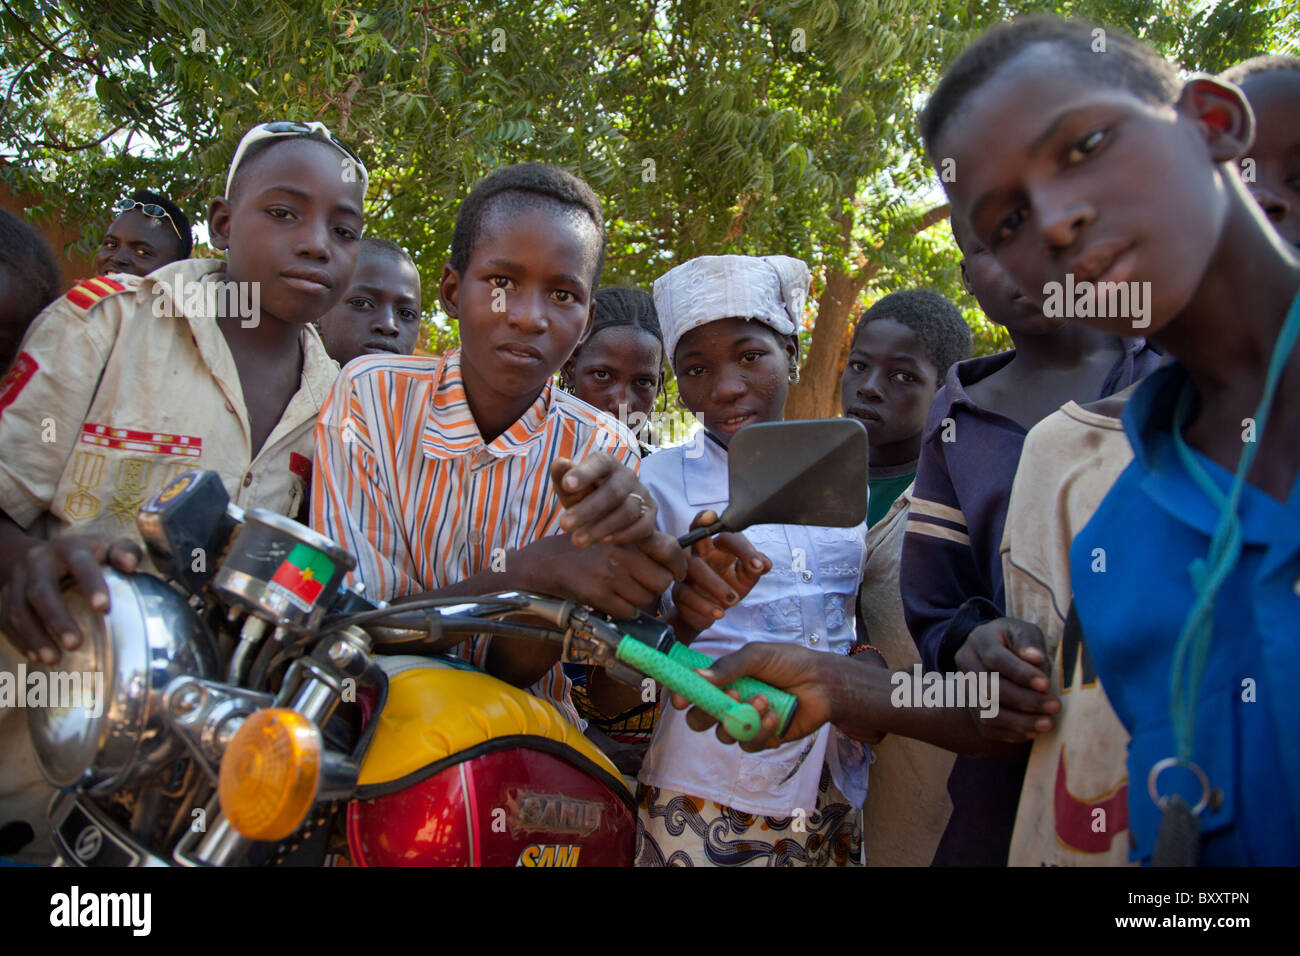 Les enfants au marché de village peul de Bourro dans le nord du Burkina Faso. Banque D'Images